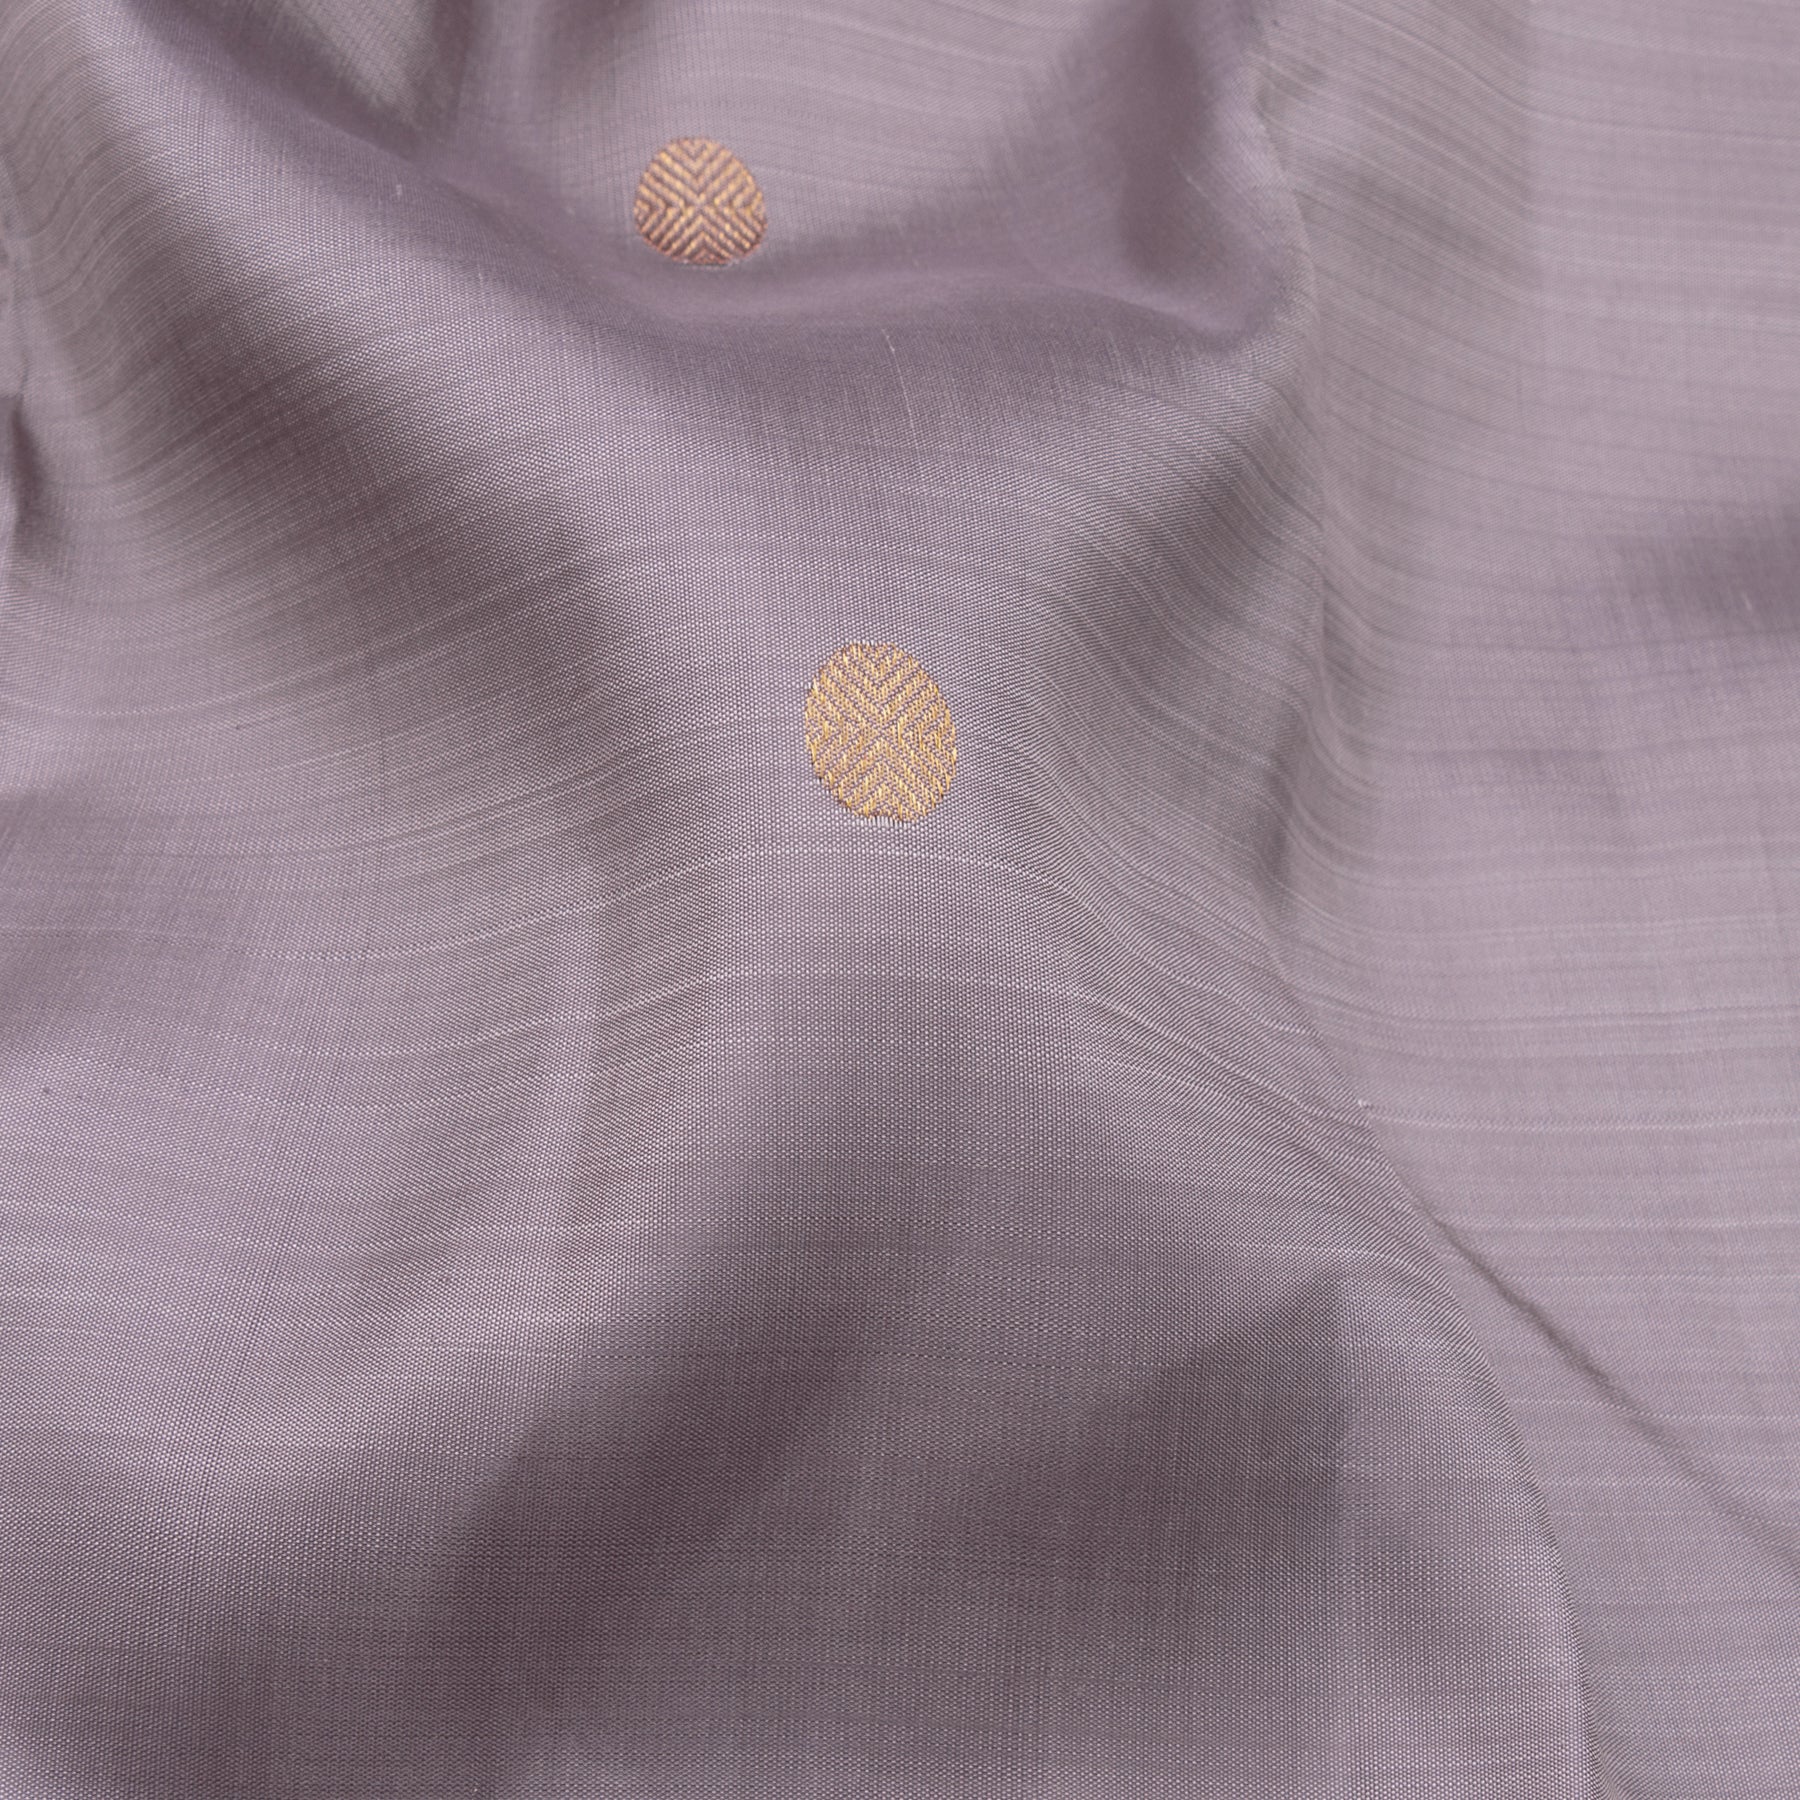 Kanakavalli Kanjivaram Silk Sari 23-611-HS001-12923 - Fabric View